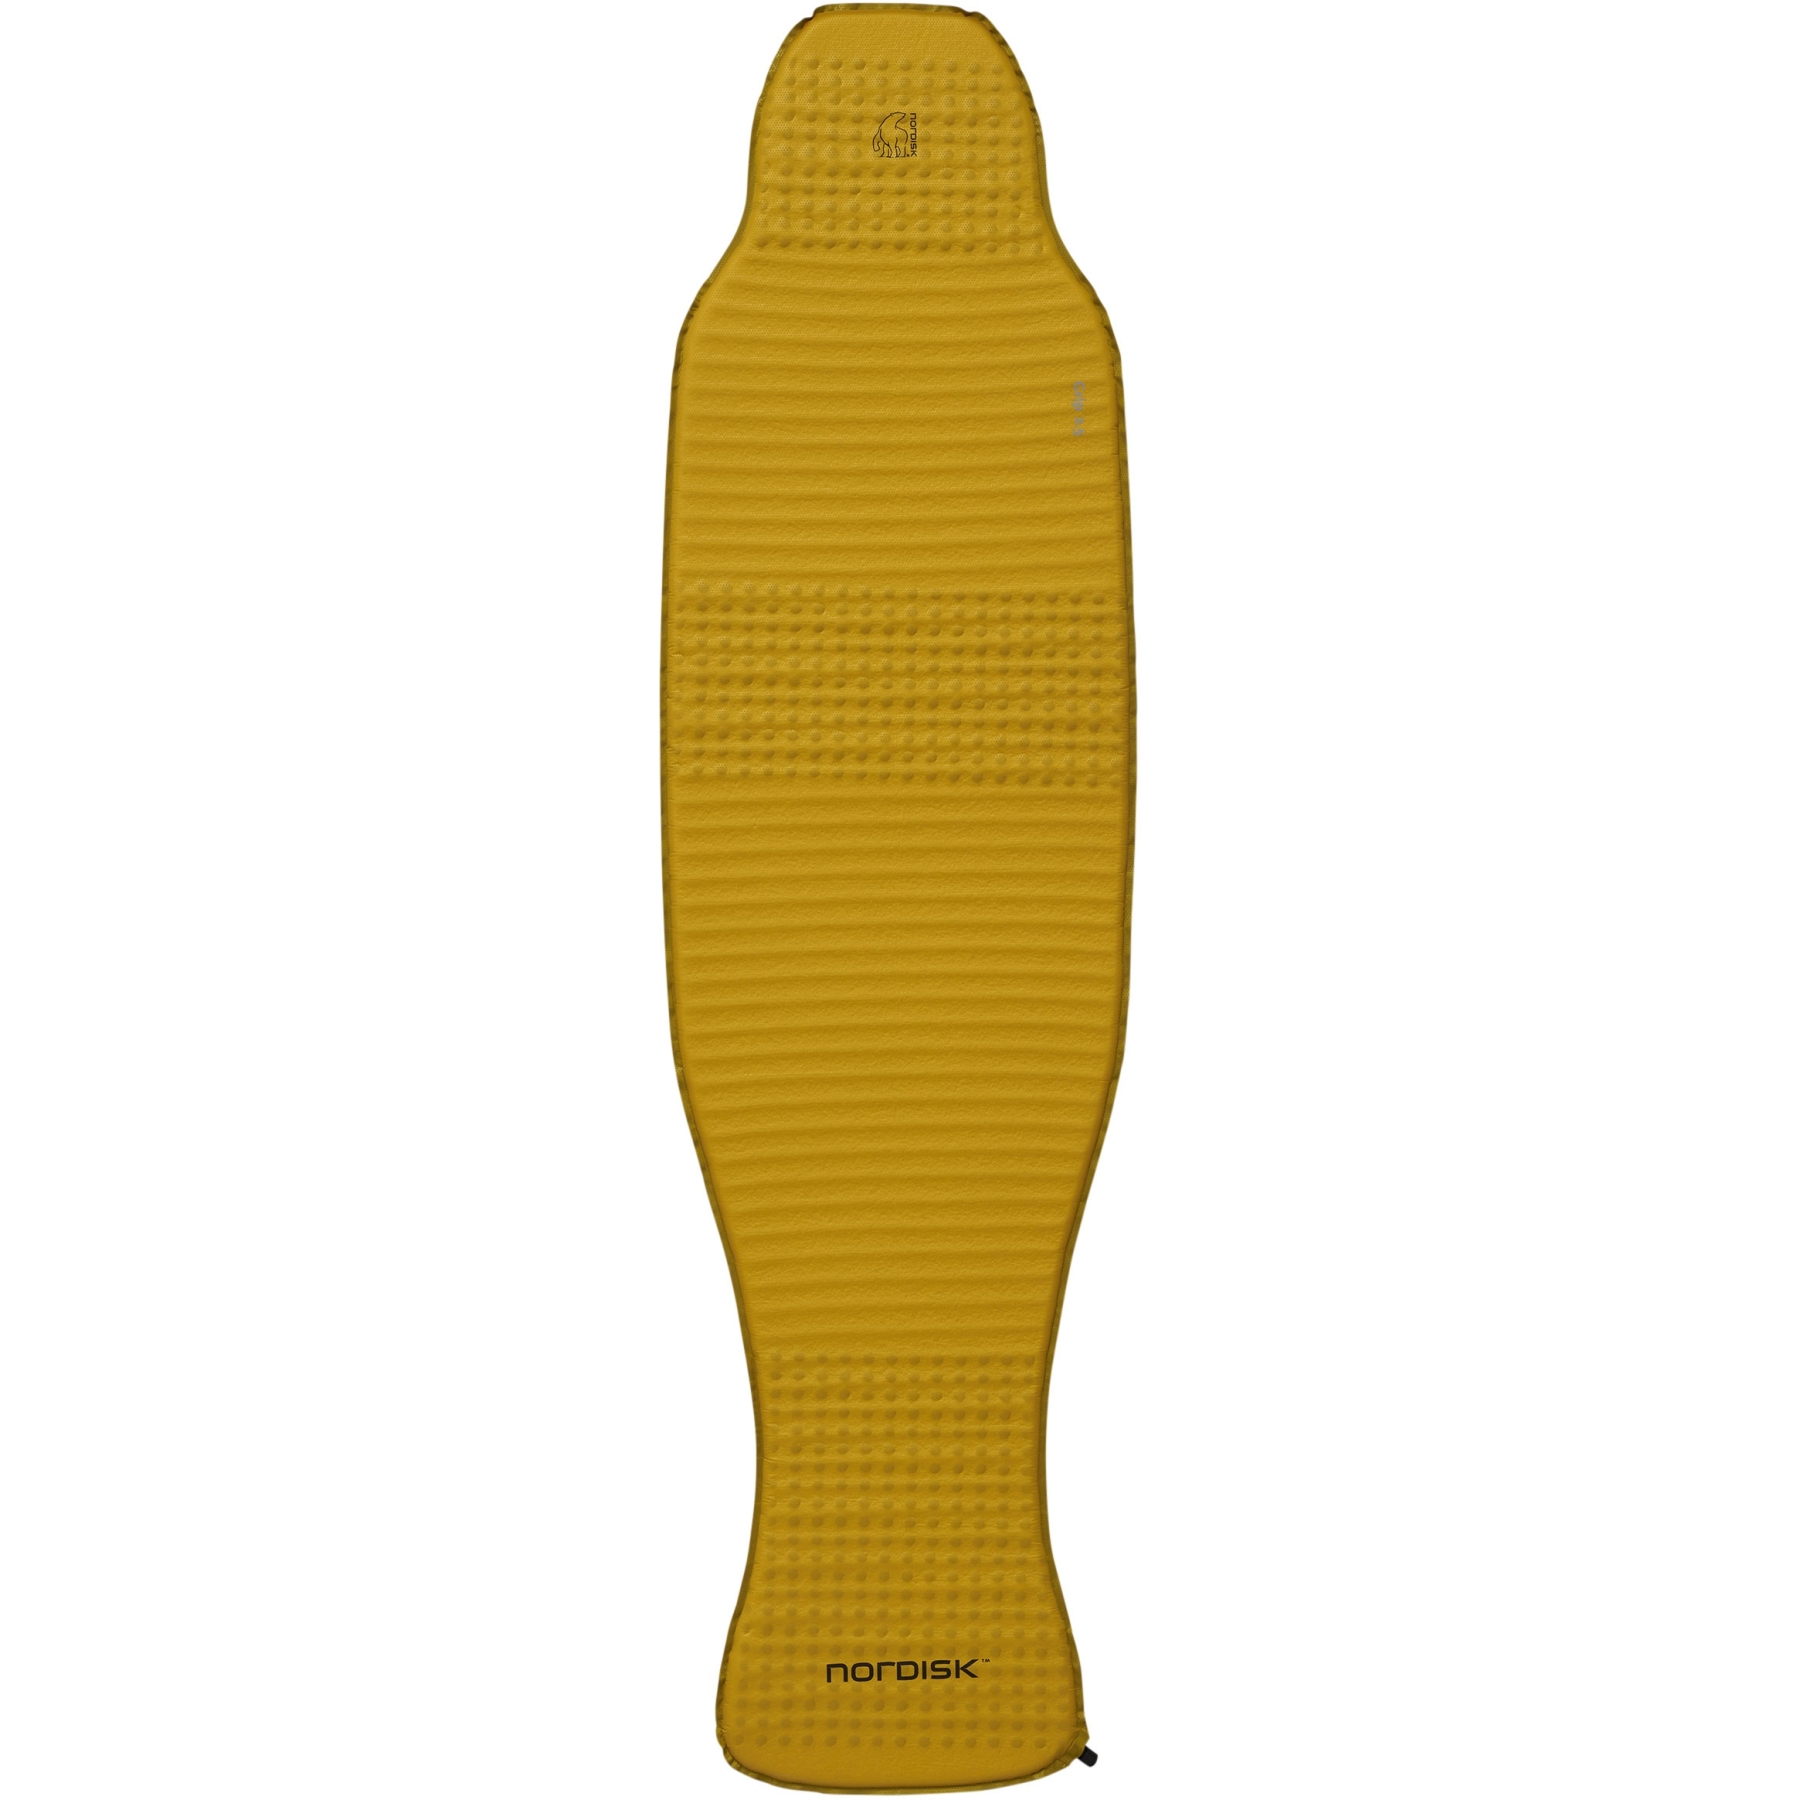 Produktbild von Nordisk Grip 2.5 Isomatte Large - mustard yellow/black